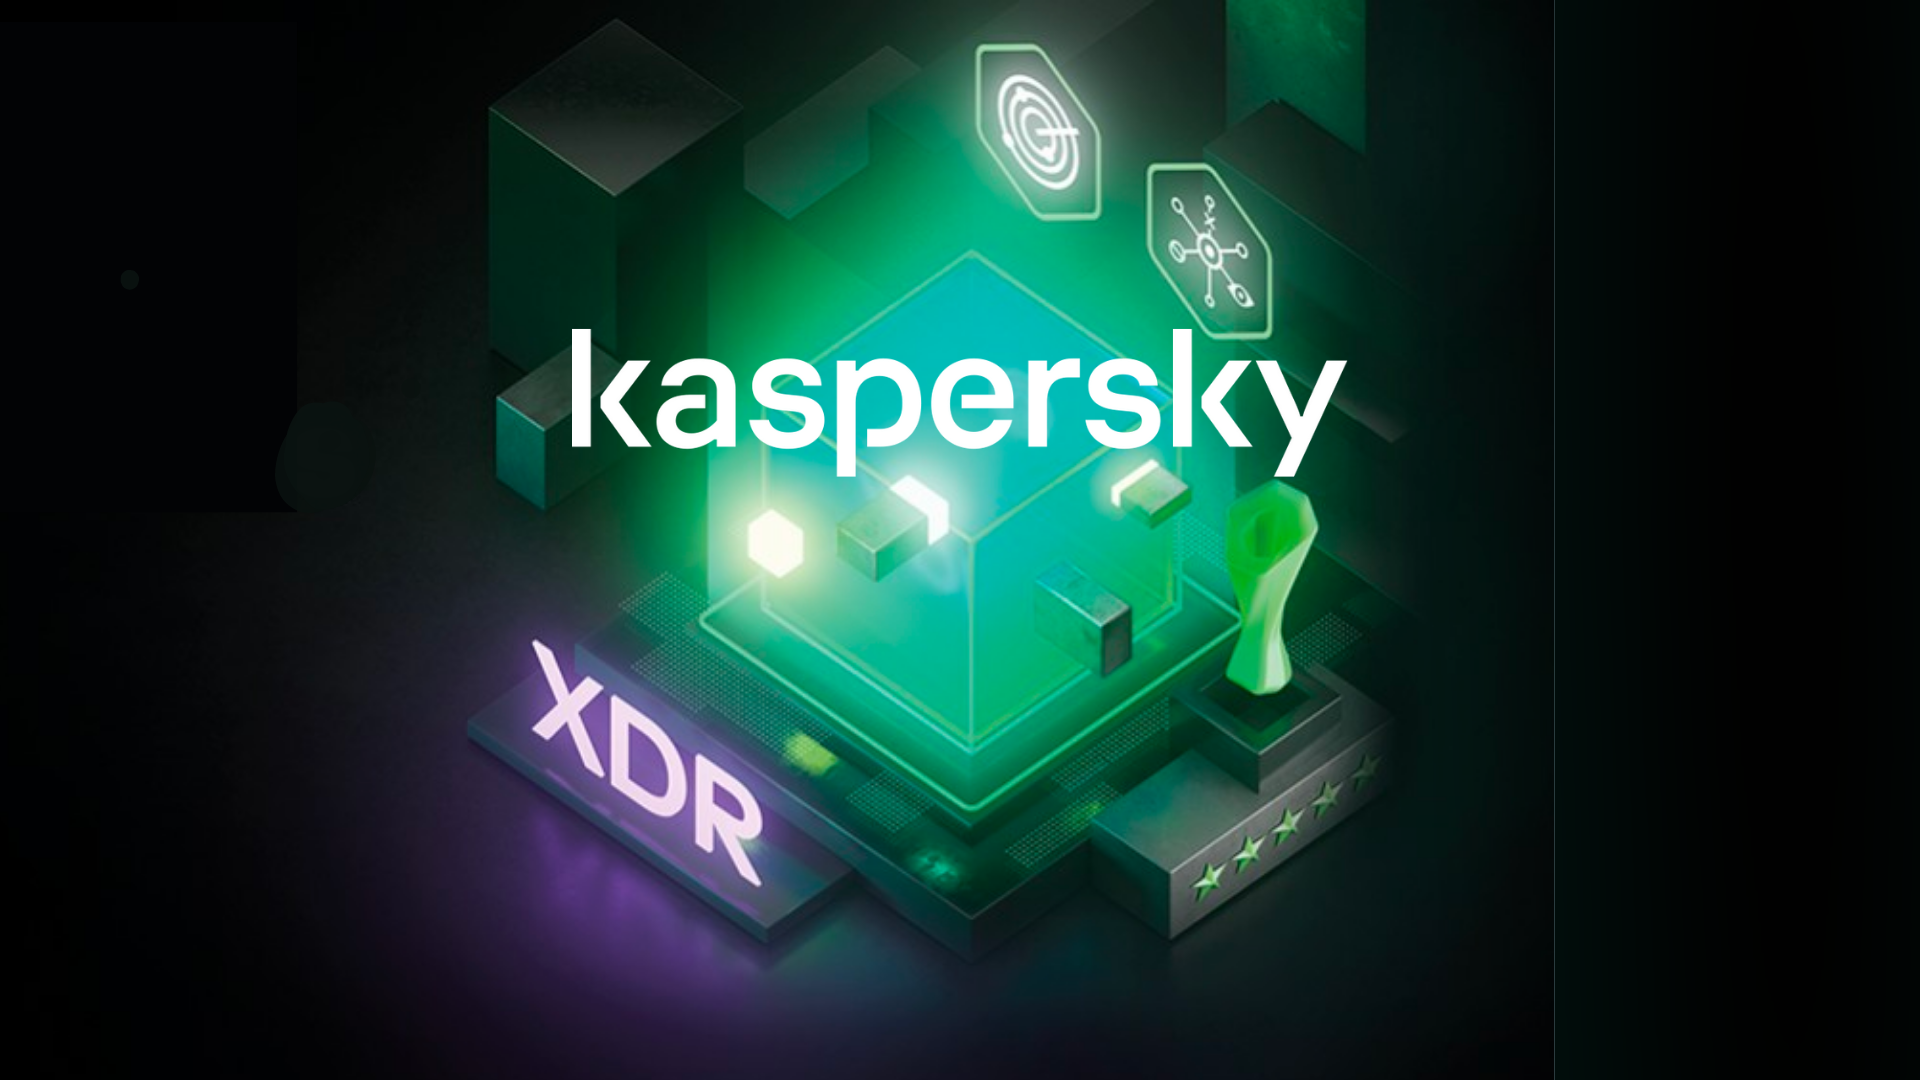 XDR Kaspersky: Eleva la Protección de tu Empresa